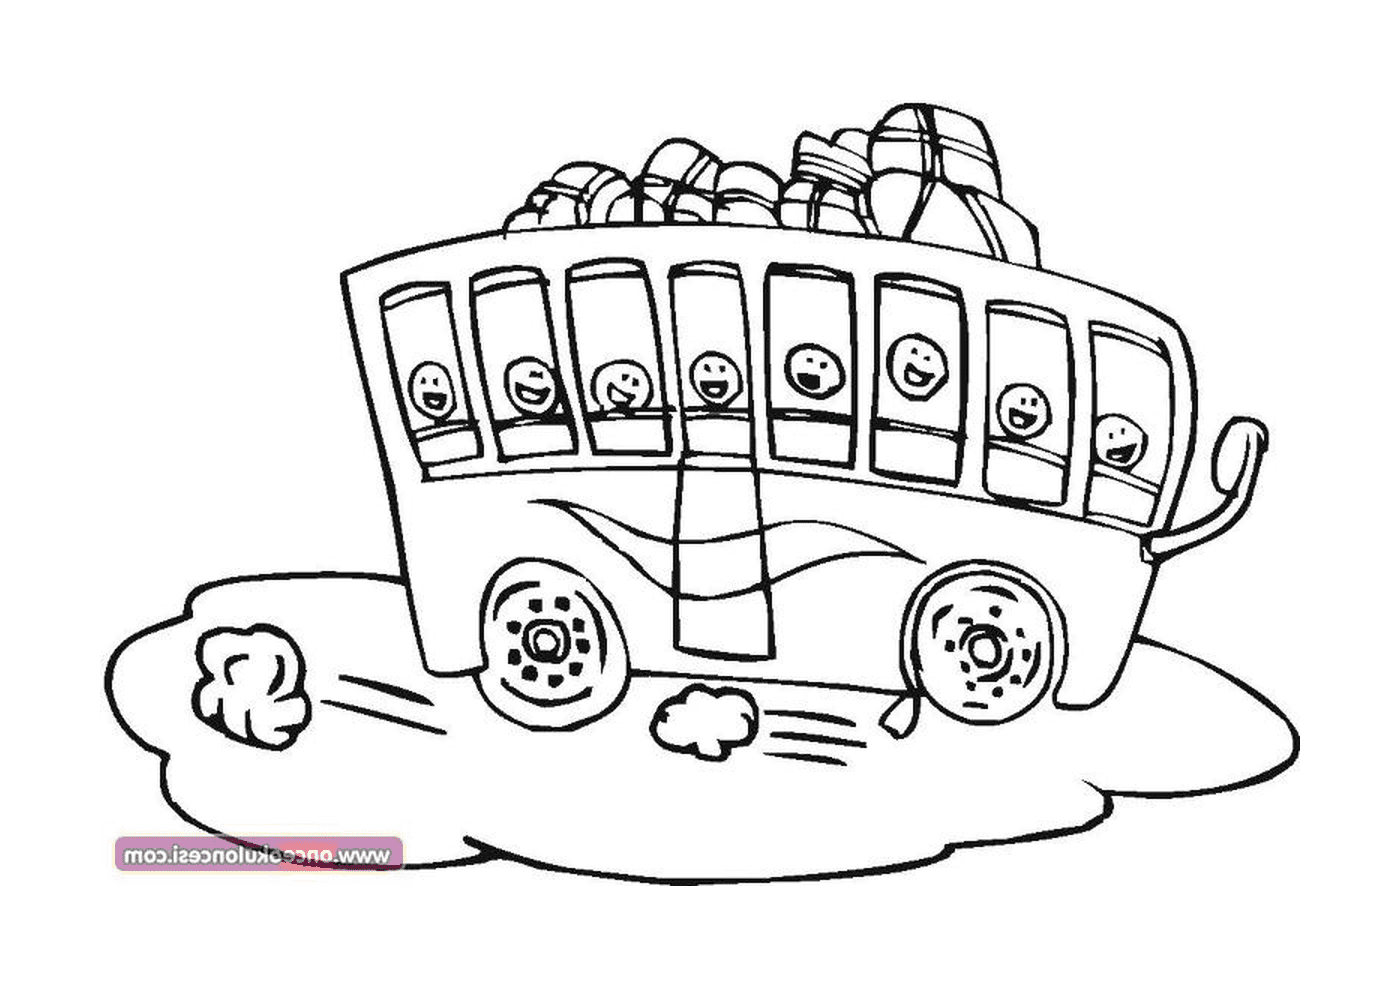  Un autobús con muchas caras dibujadas en él 